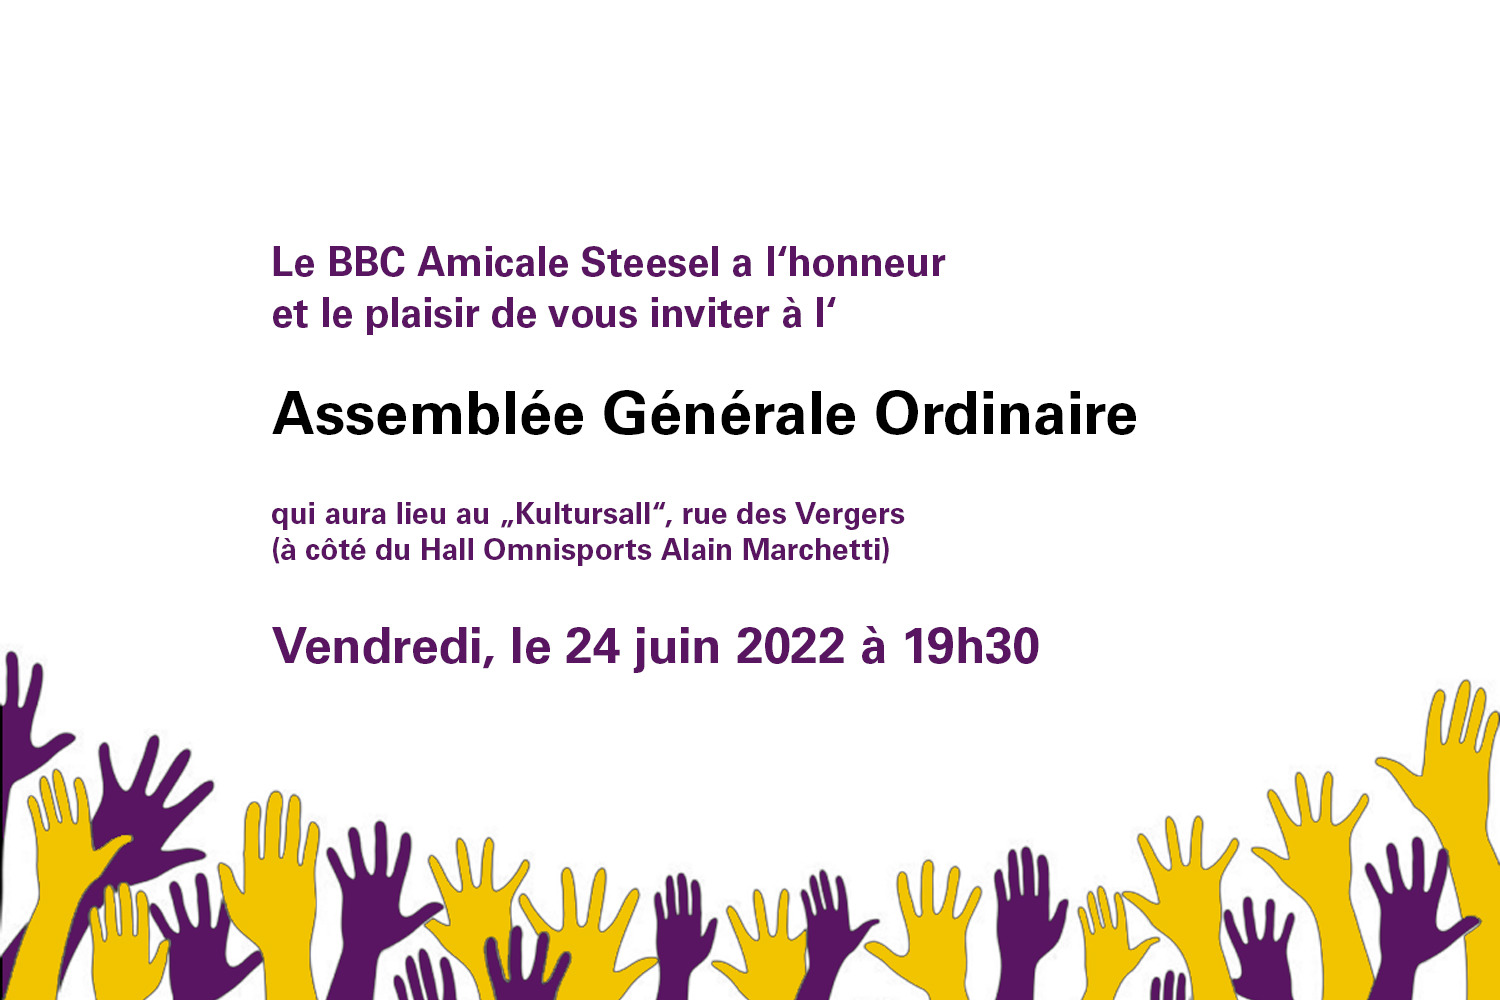 Featured image for “Assemblée Générale Ordinaire”